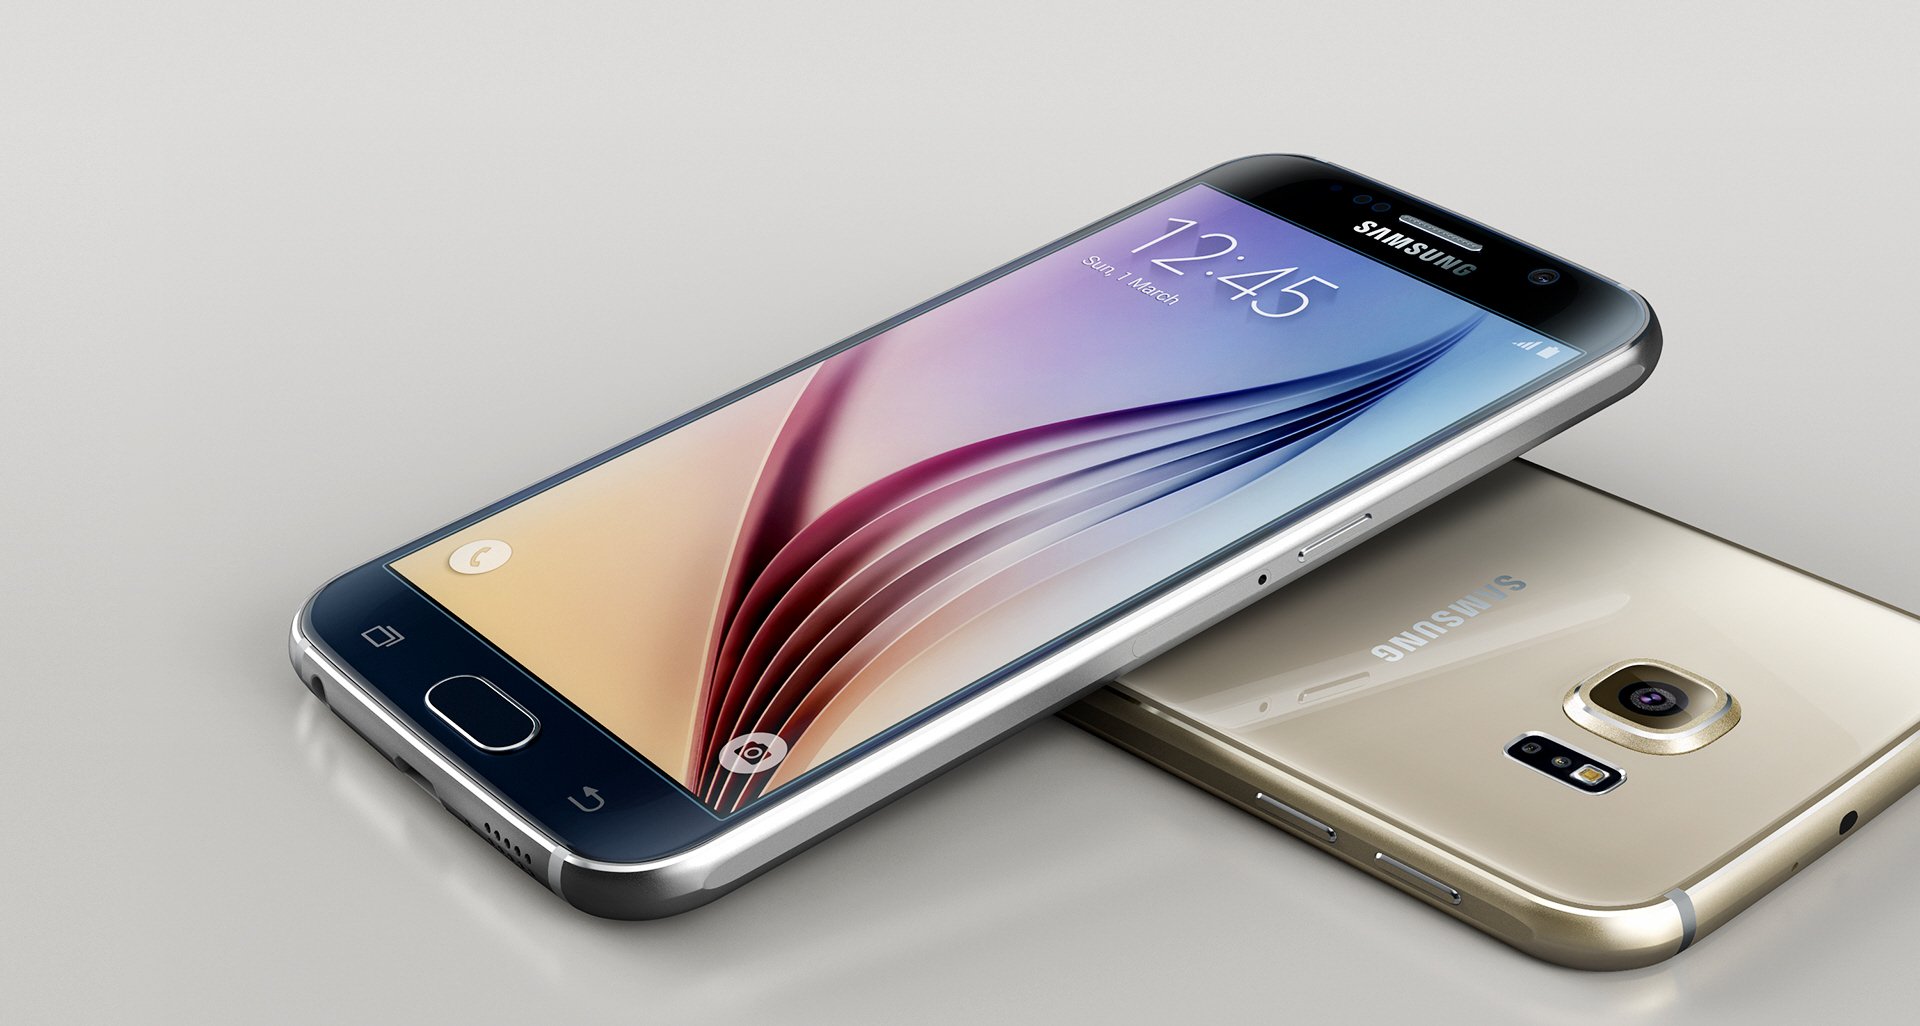 Nieoczekiwanie: starsze smartfony Samsung Galaxy S6, Galaxy S6 Edge i Galaxy S6 Edge+ otrzymują nową aktualizację oprogramowania